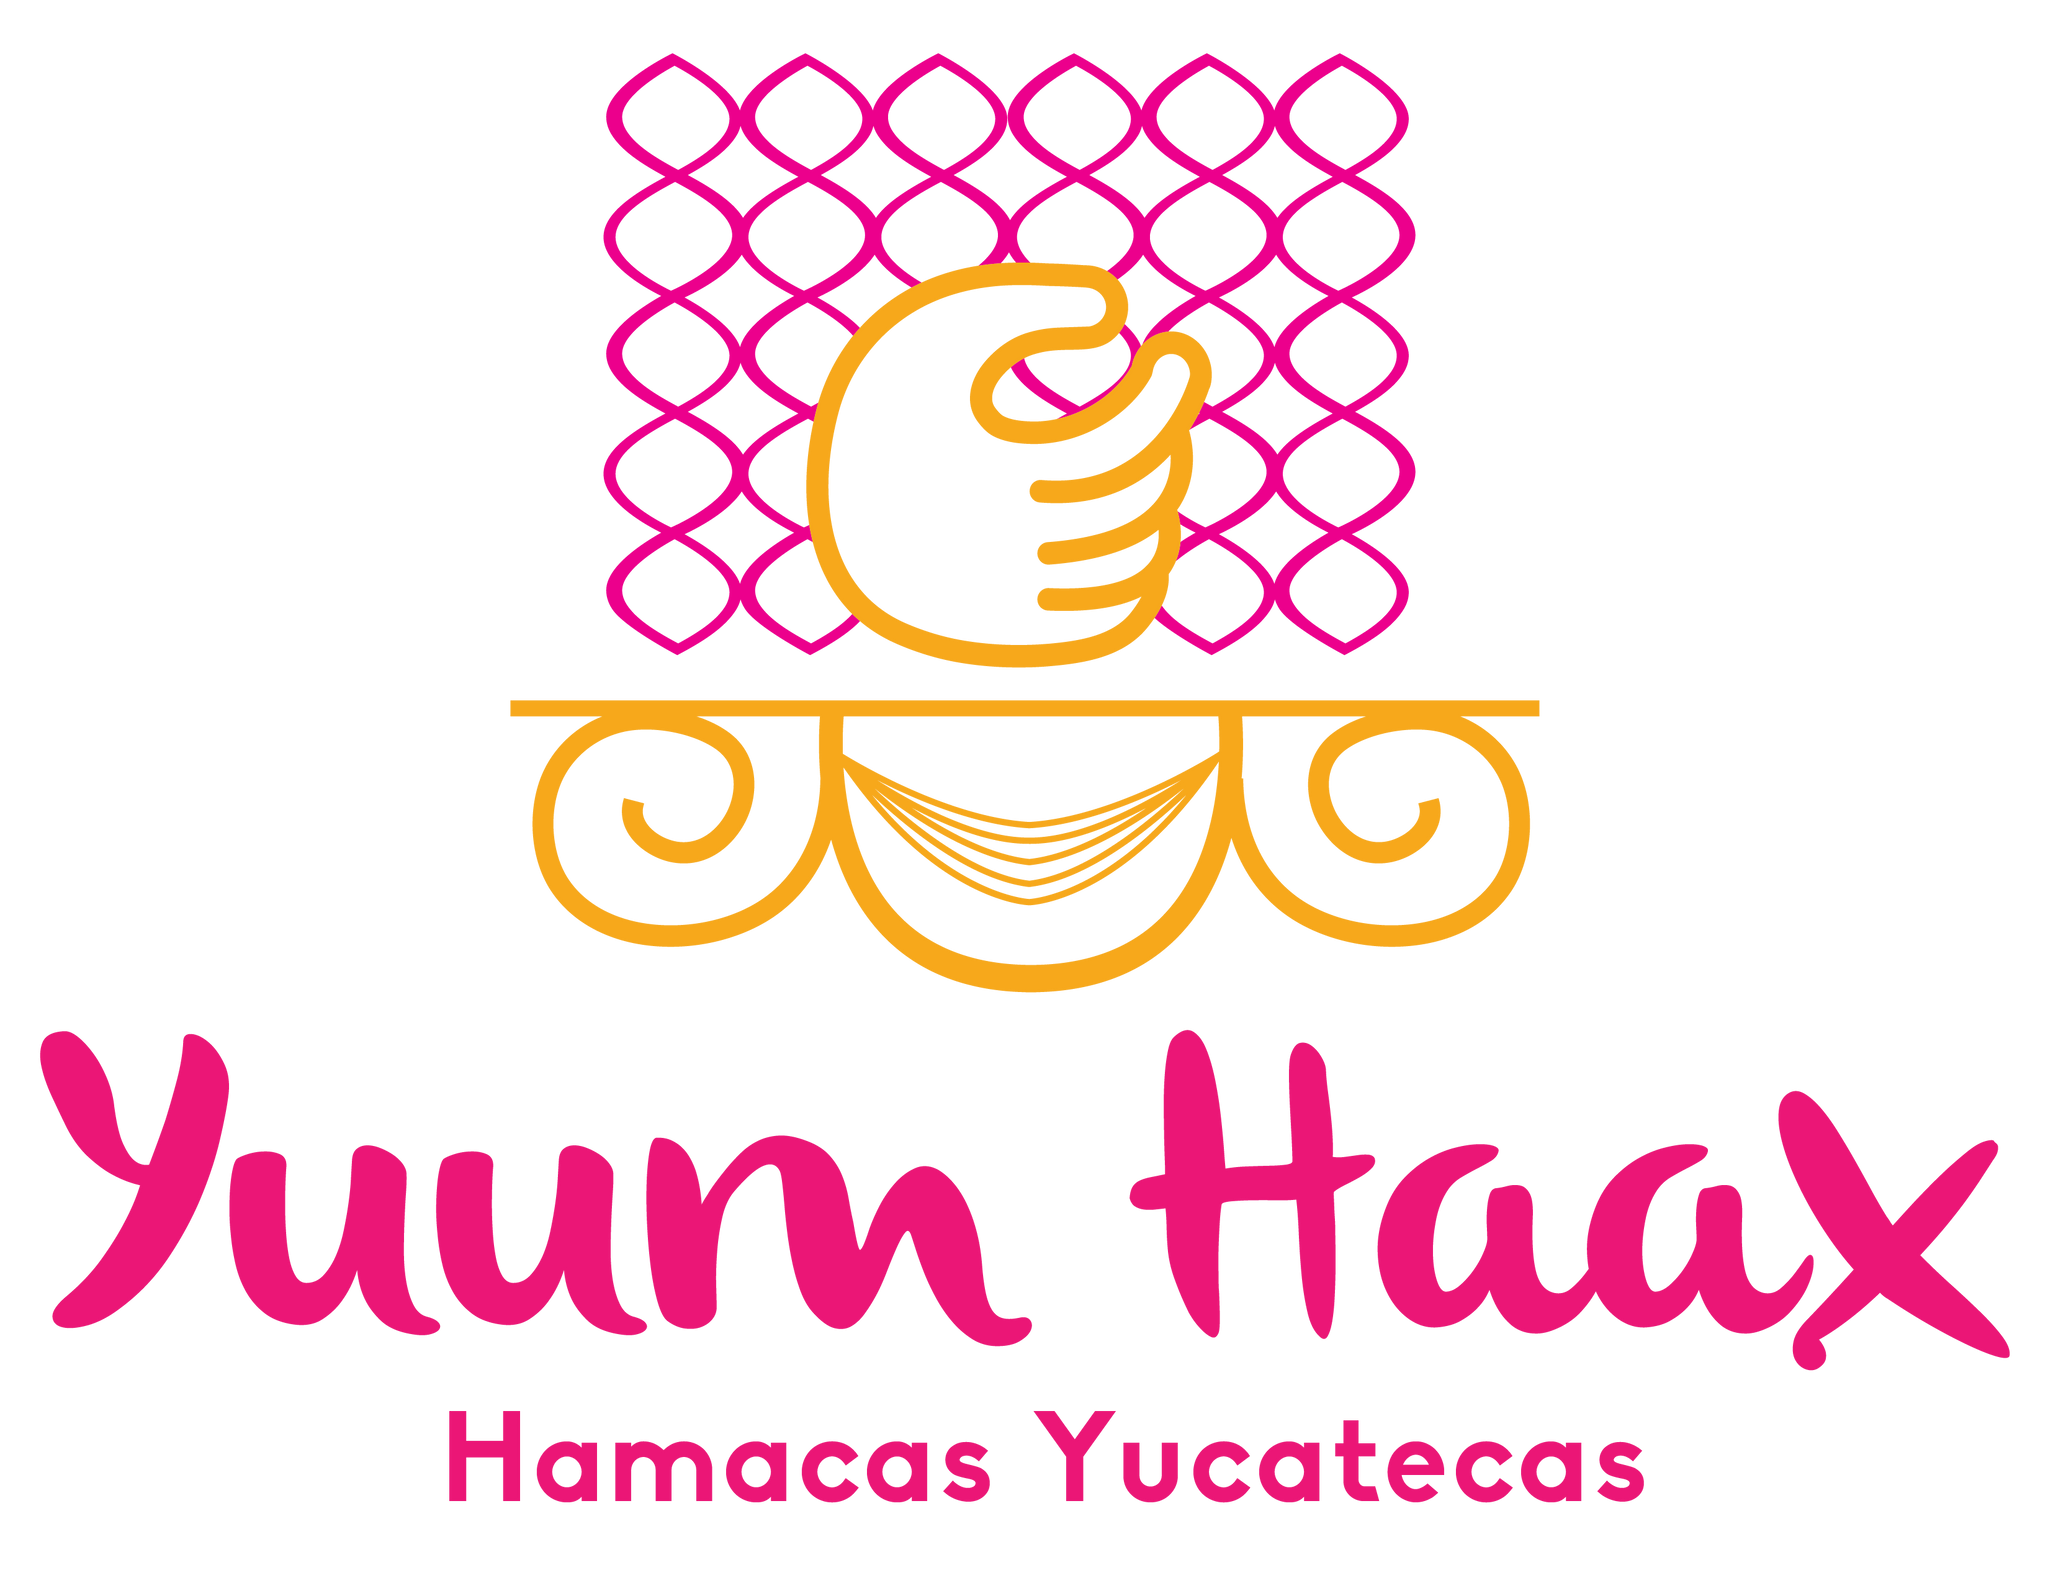 Logo Yuum Haax color sin fondo